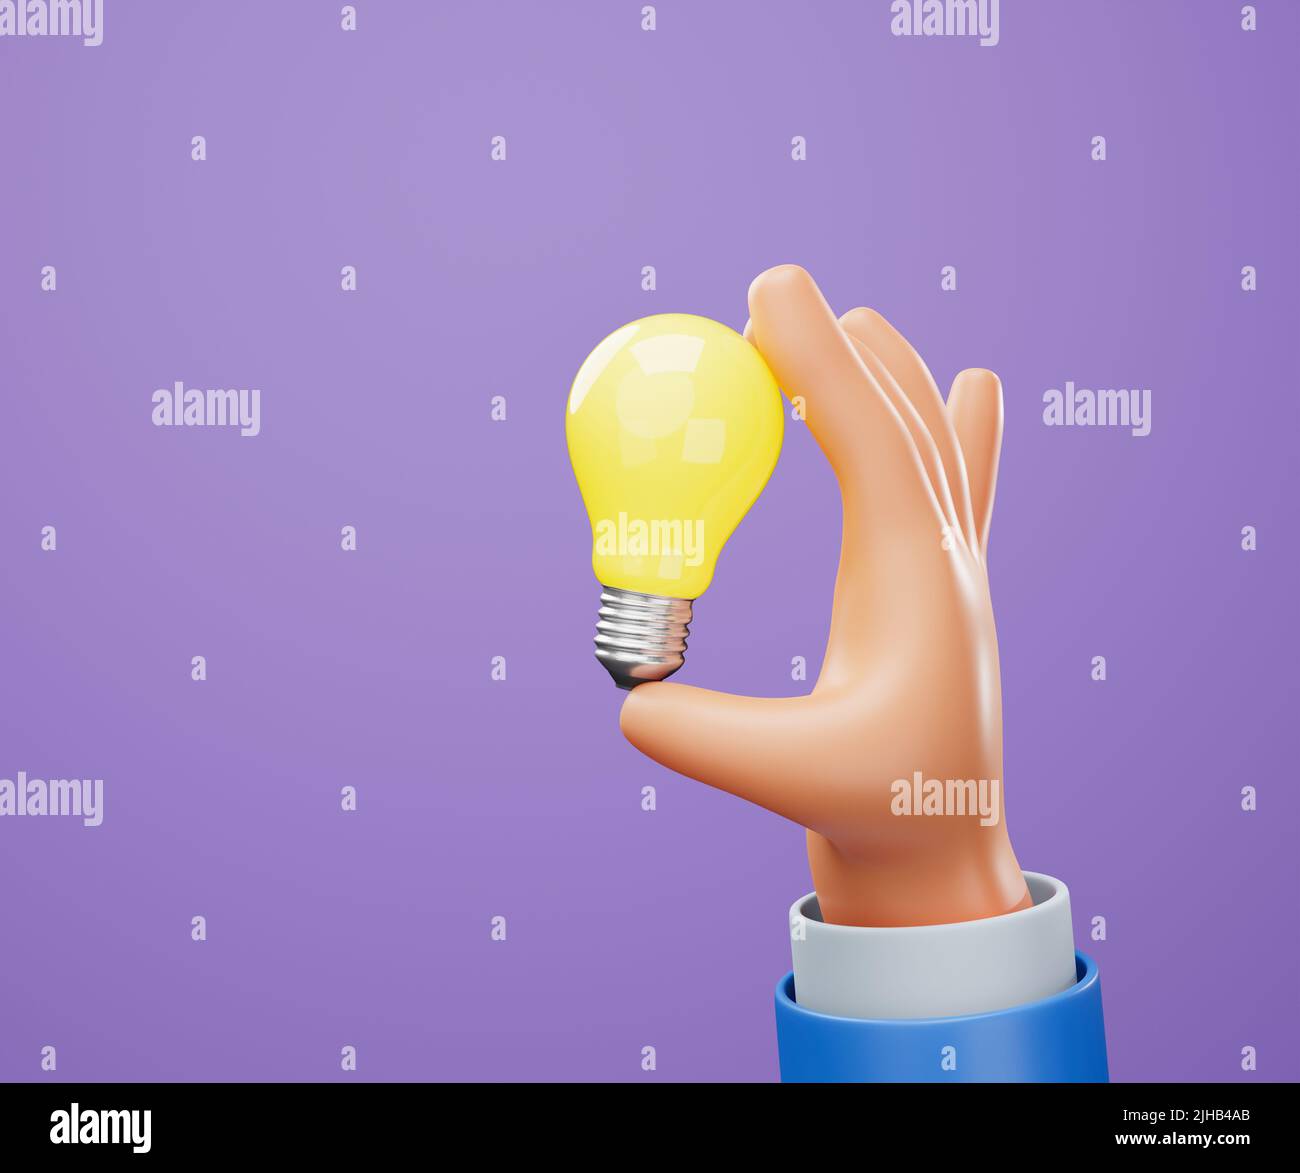 3D Cartoon mano sosteniendo bombilla sobre fondo púrpura. Buena idea y éxito de negocio concepto creativo. ilustración 3d Foto de stock